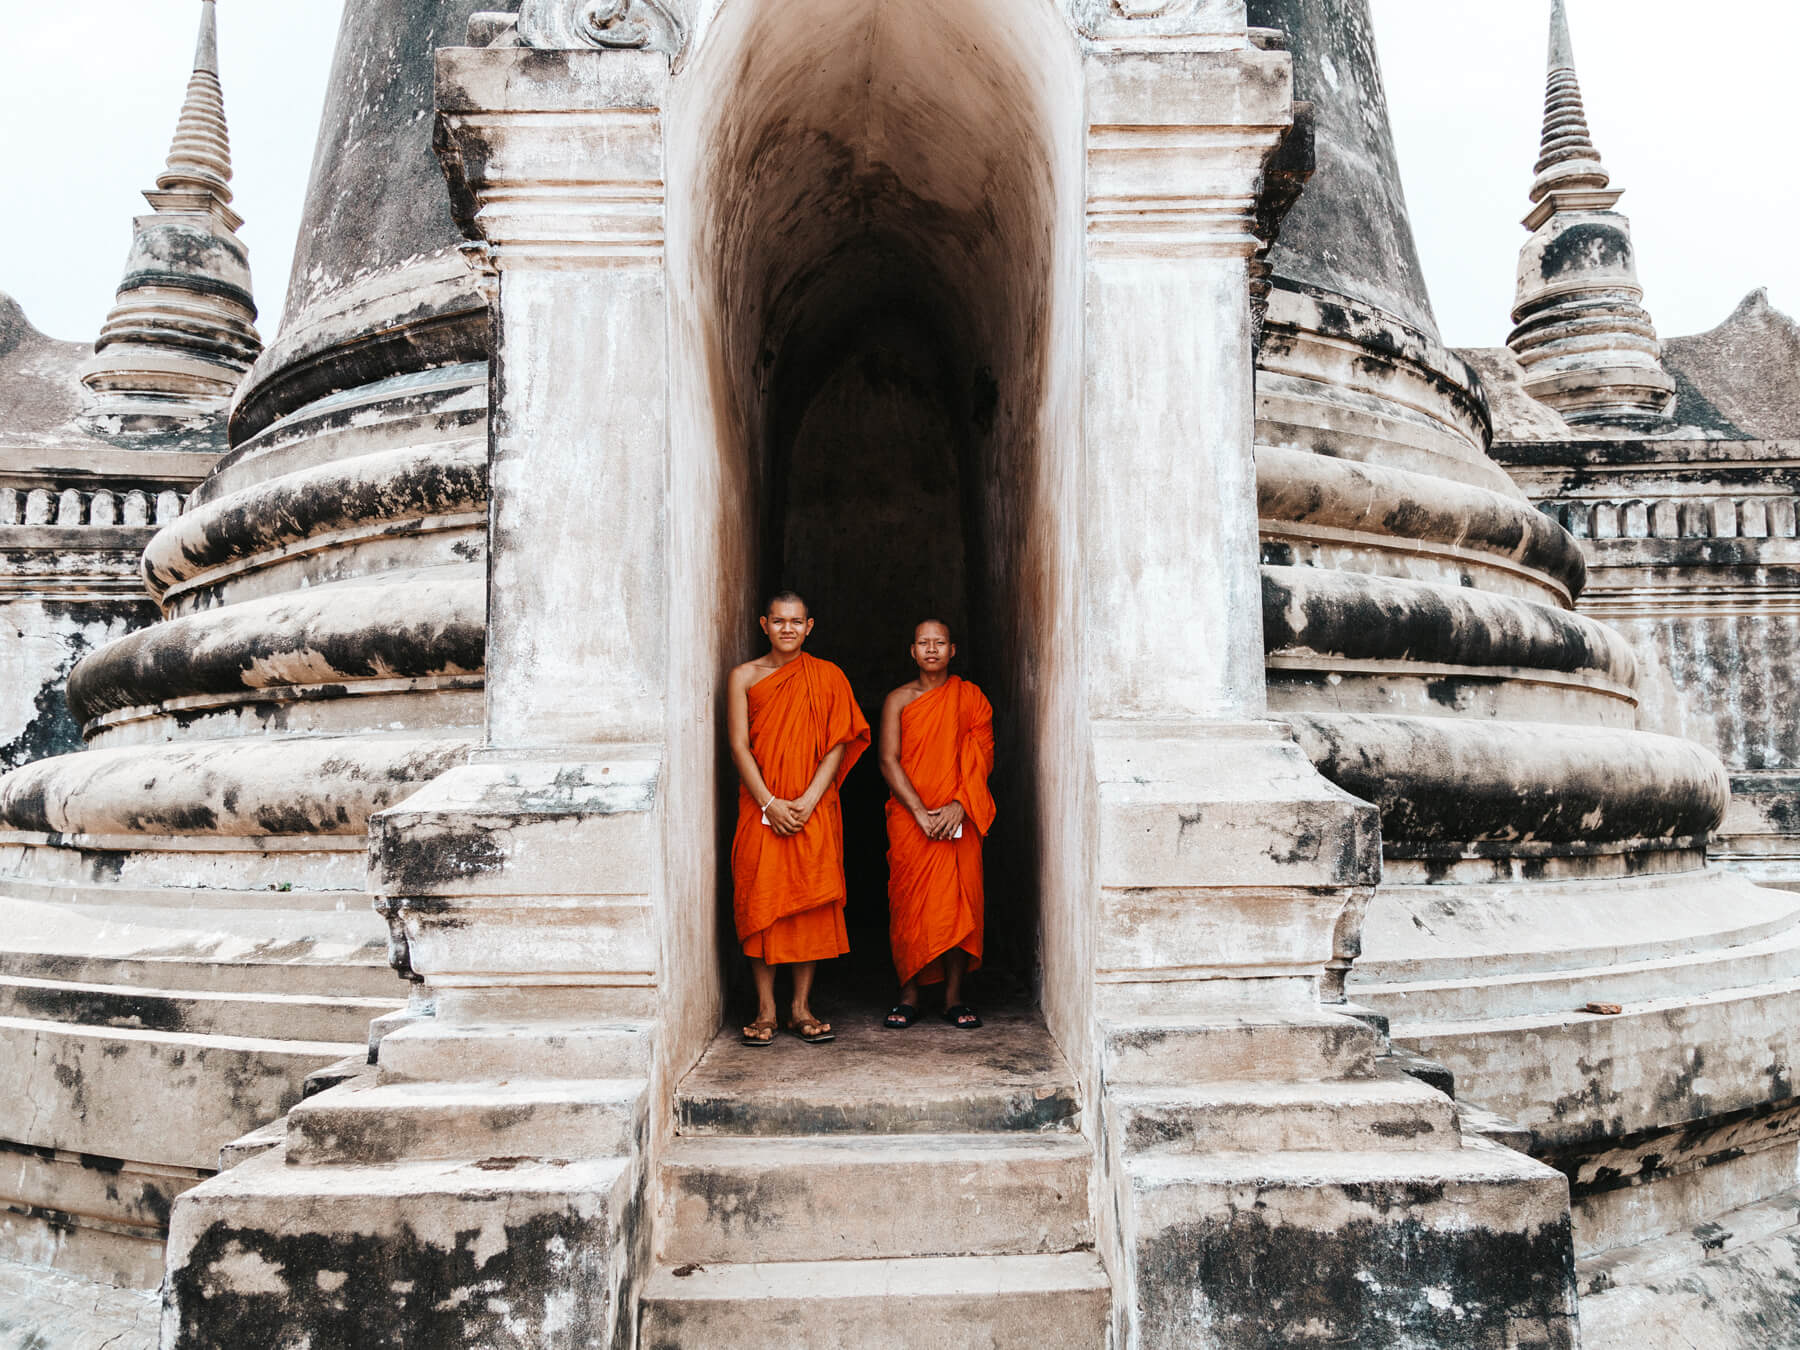 Jovens montes em um dos templos de Ayutthaya